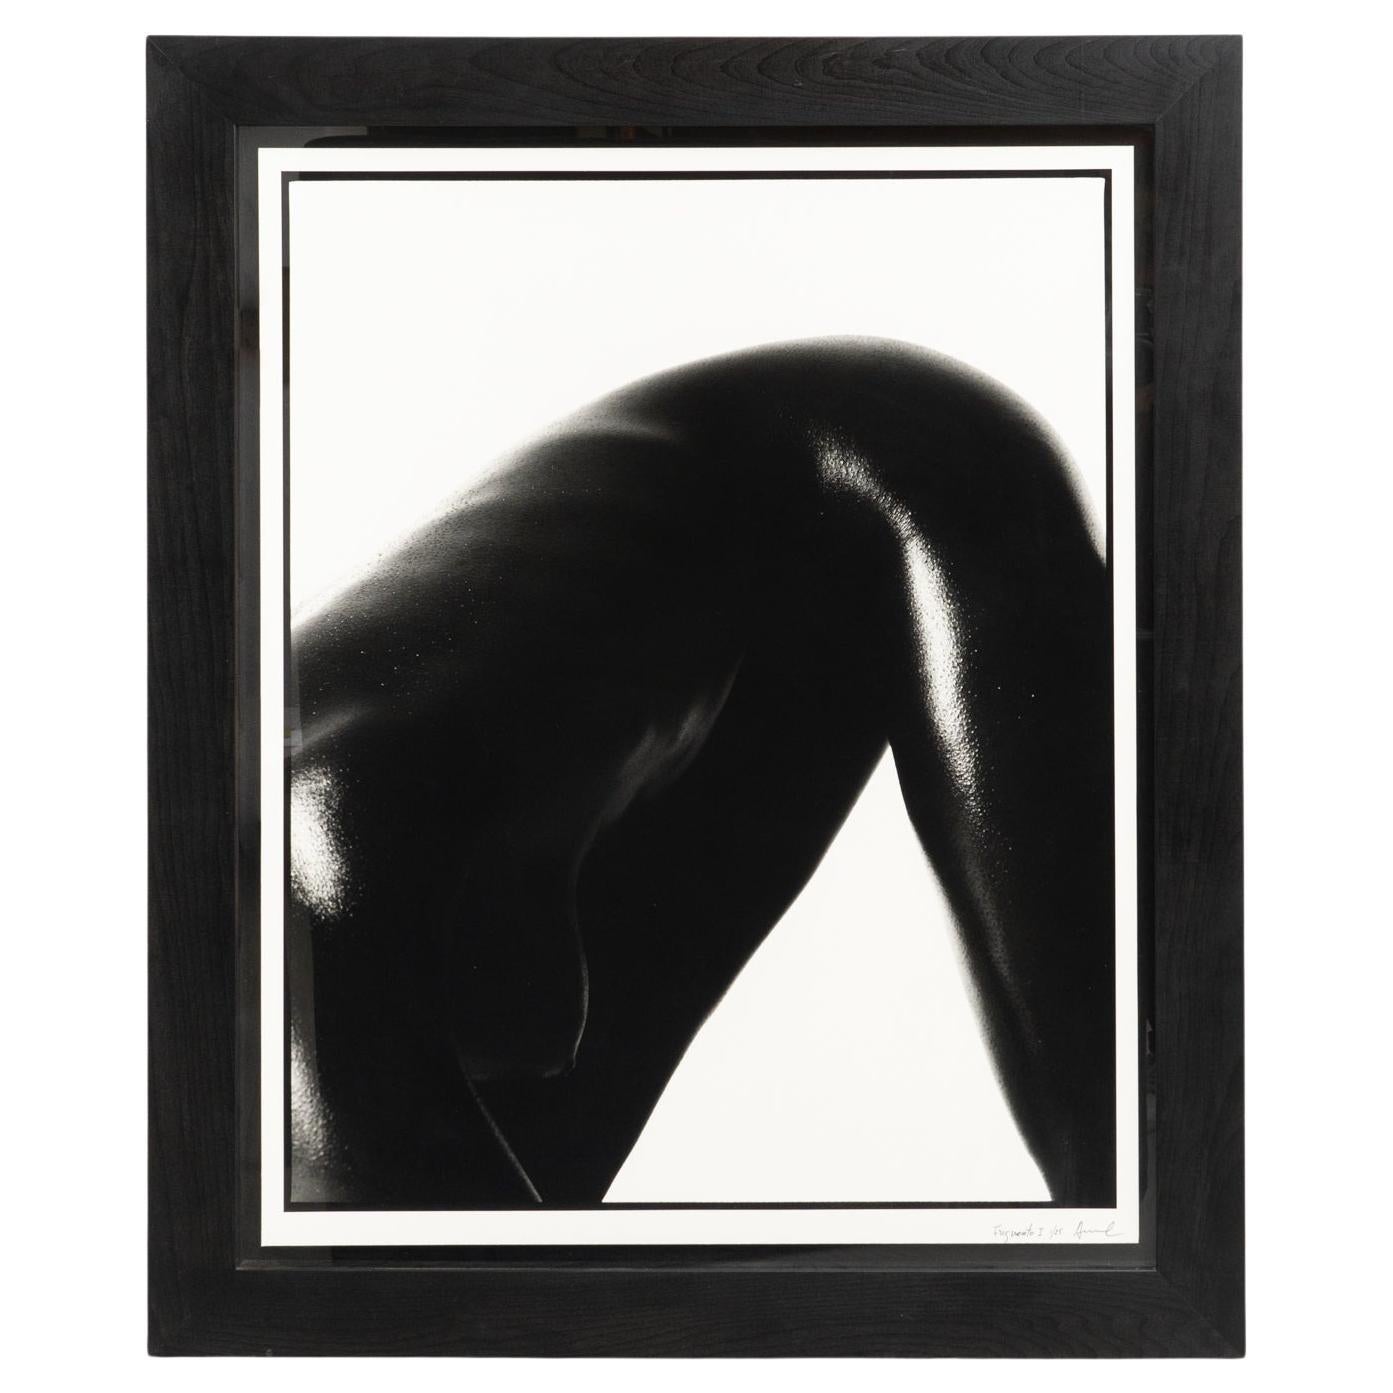 Miquel Arnal Contemporary Photography, circa 1990